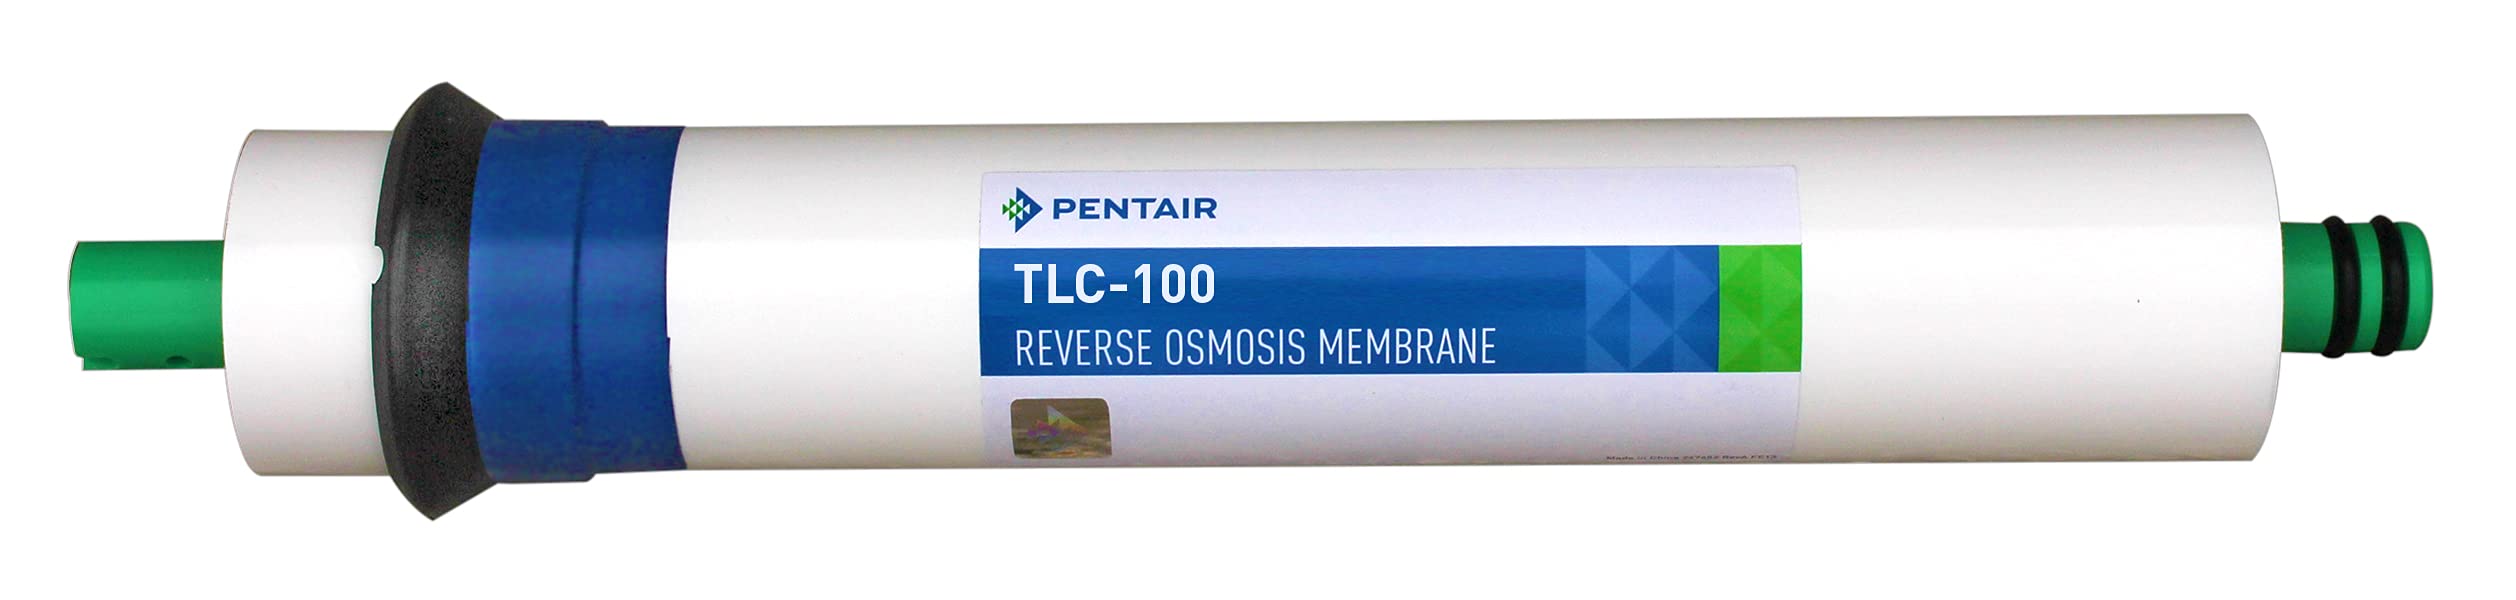 Pentair TLC-100 Umkehrosmose, TLC dünne Schicht Membran-Ersatz, 100 GPD Durchflussmenge, Weiss/opulenter Garten, 1 Count (Pack of 1)